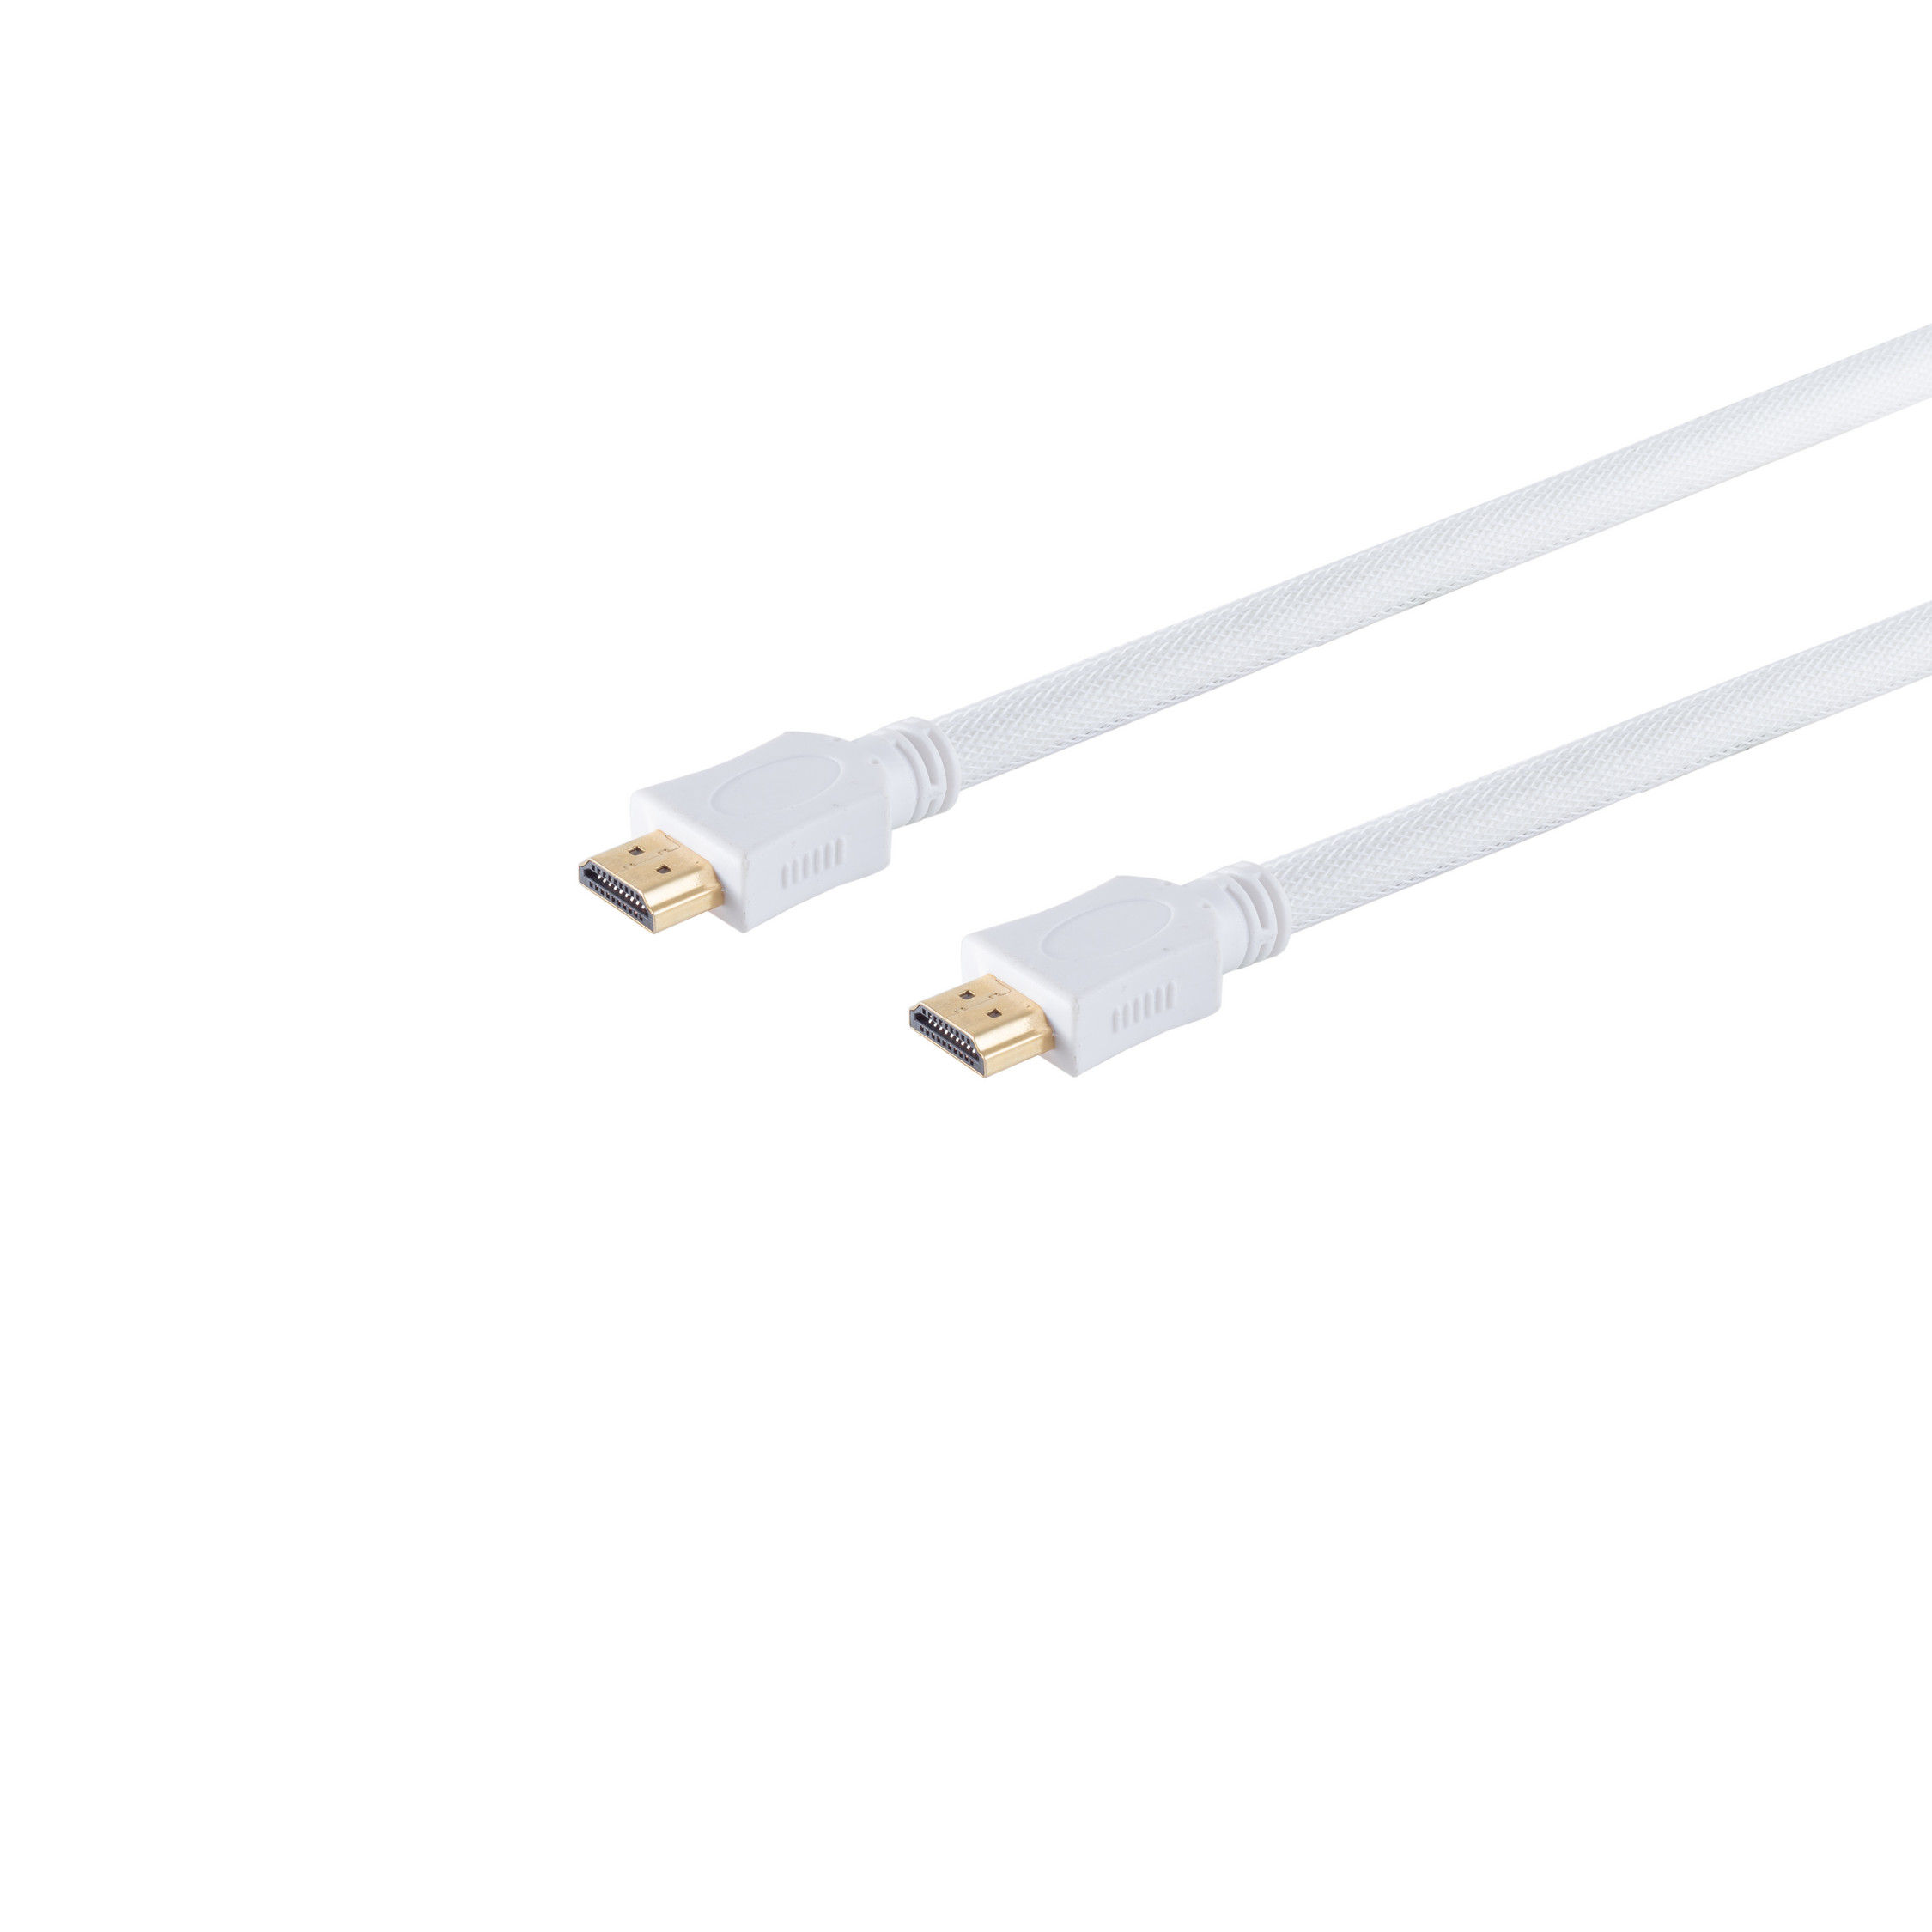 Nylon Kabel CONNECTIVITY A-St Mantel HDMI 3m A-St/HDMI S/CONN verg weiß HDMI HEAC MAXIMUM